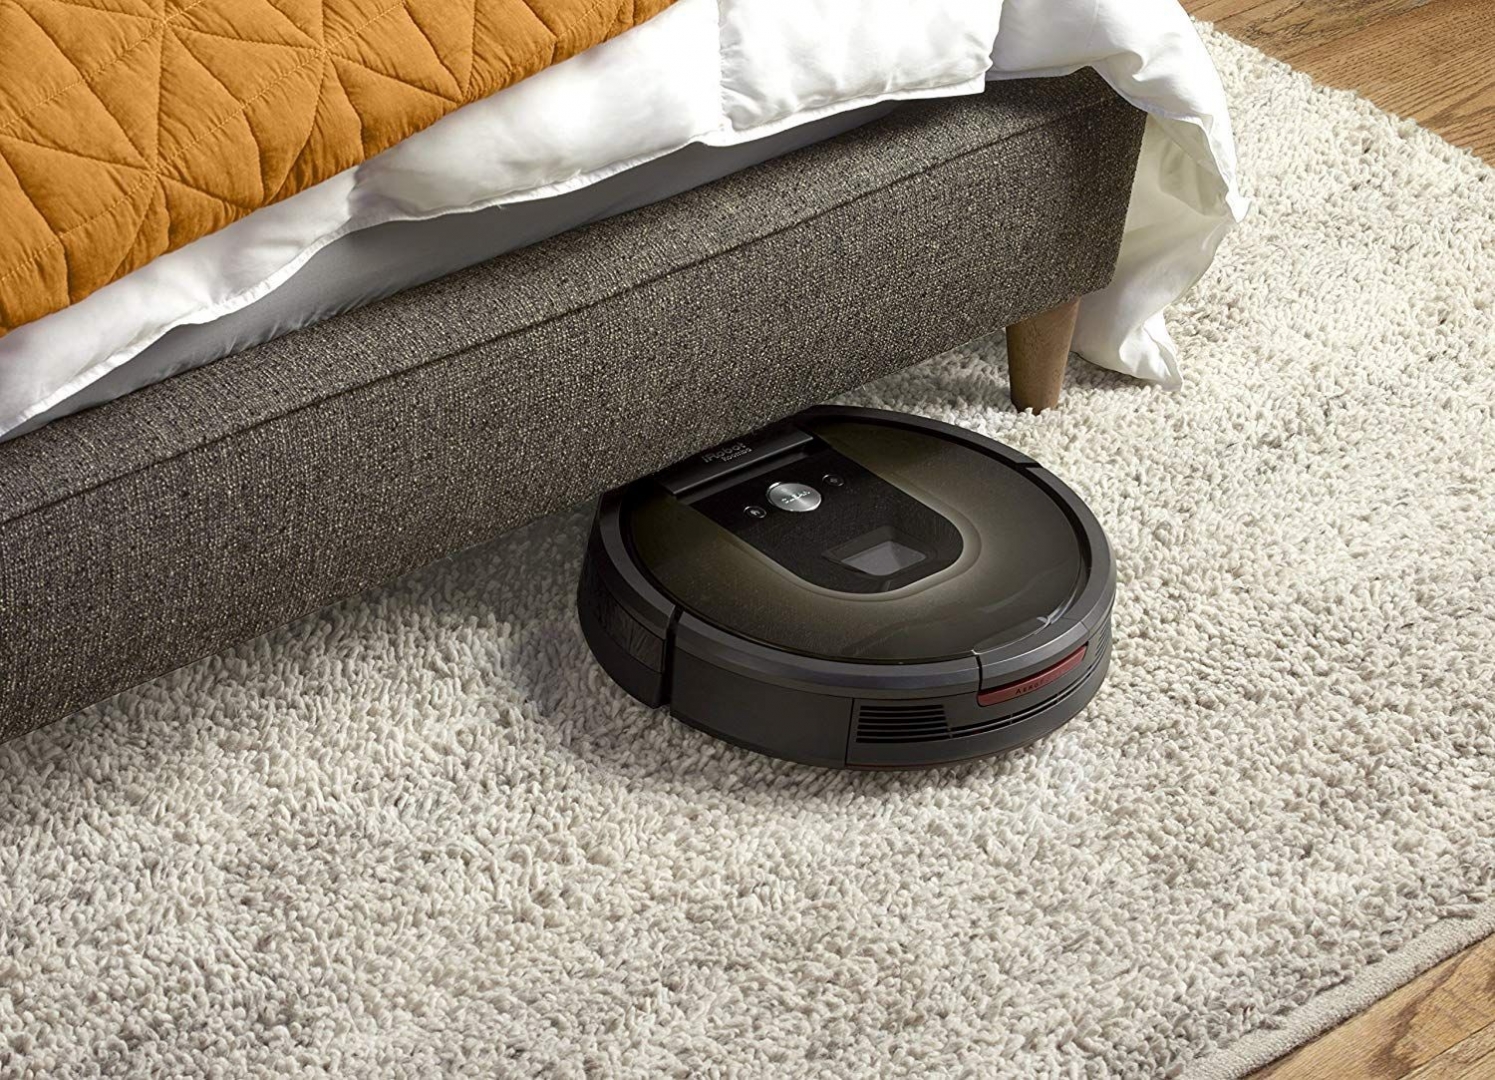 Tăng tuổi thọ cho robot hút bụi iRobot Roomba